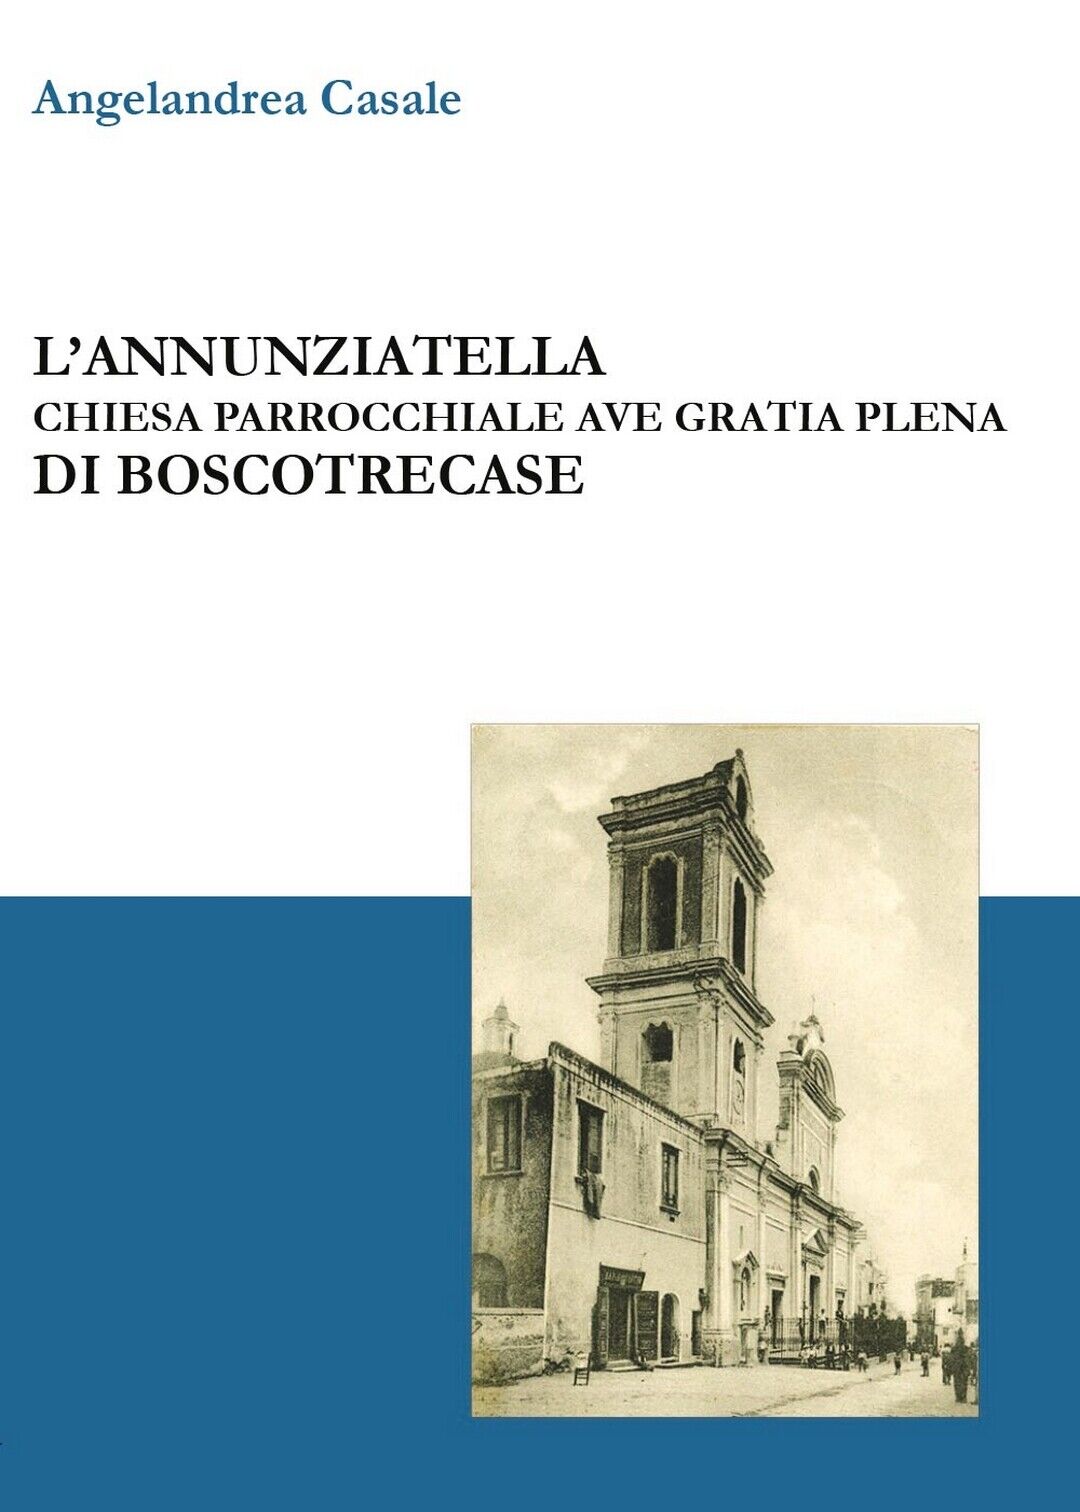 L'Annunziatella - Chiesa parrocchiale Ave Gratia Plena di Boscotrecase